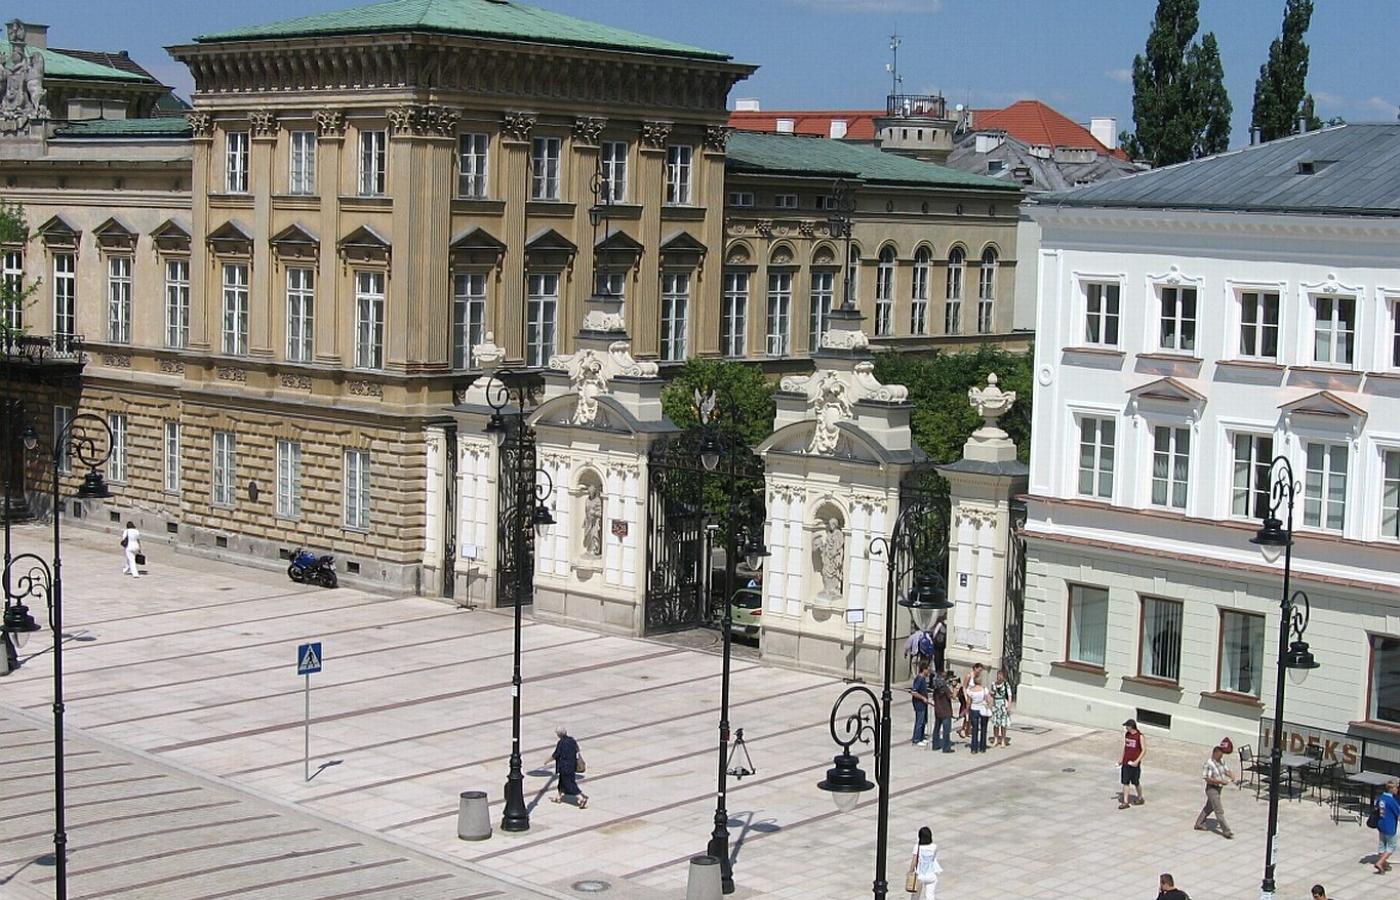 Uniwersytet Warszawski znalazł się na pierwszym miejscu w rankingu polskich uczelni akademickich.